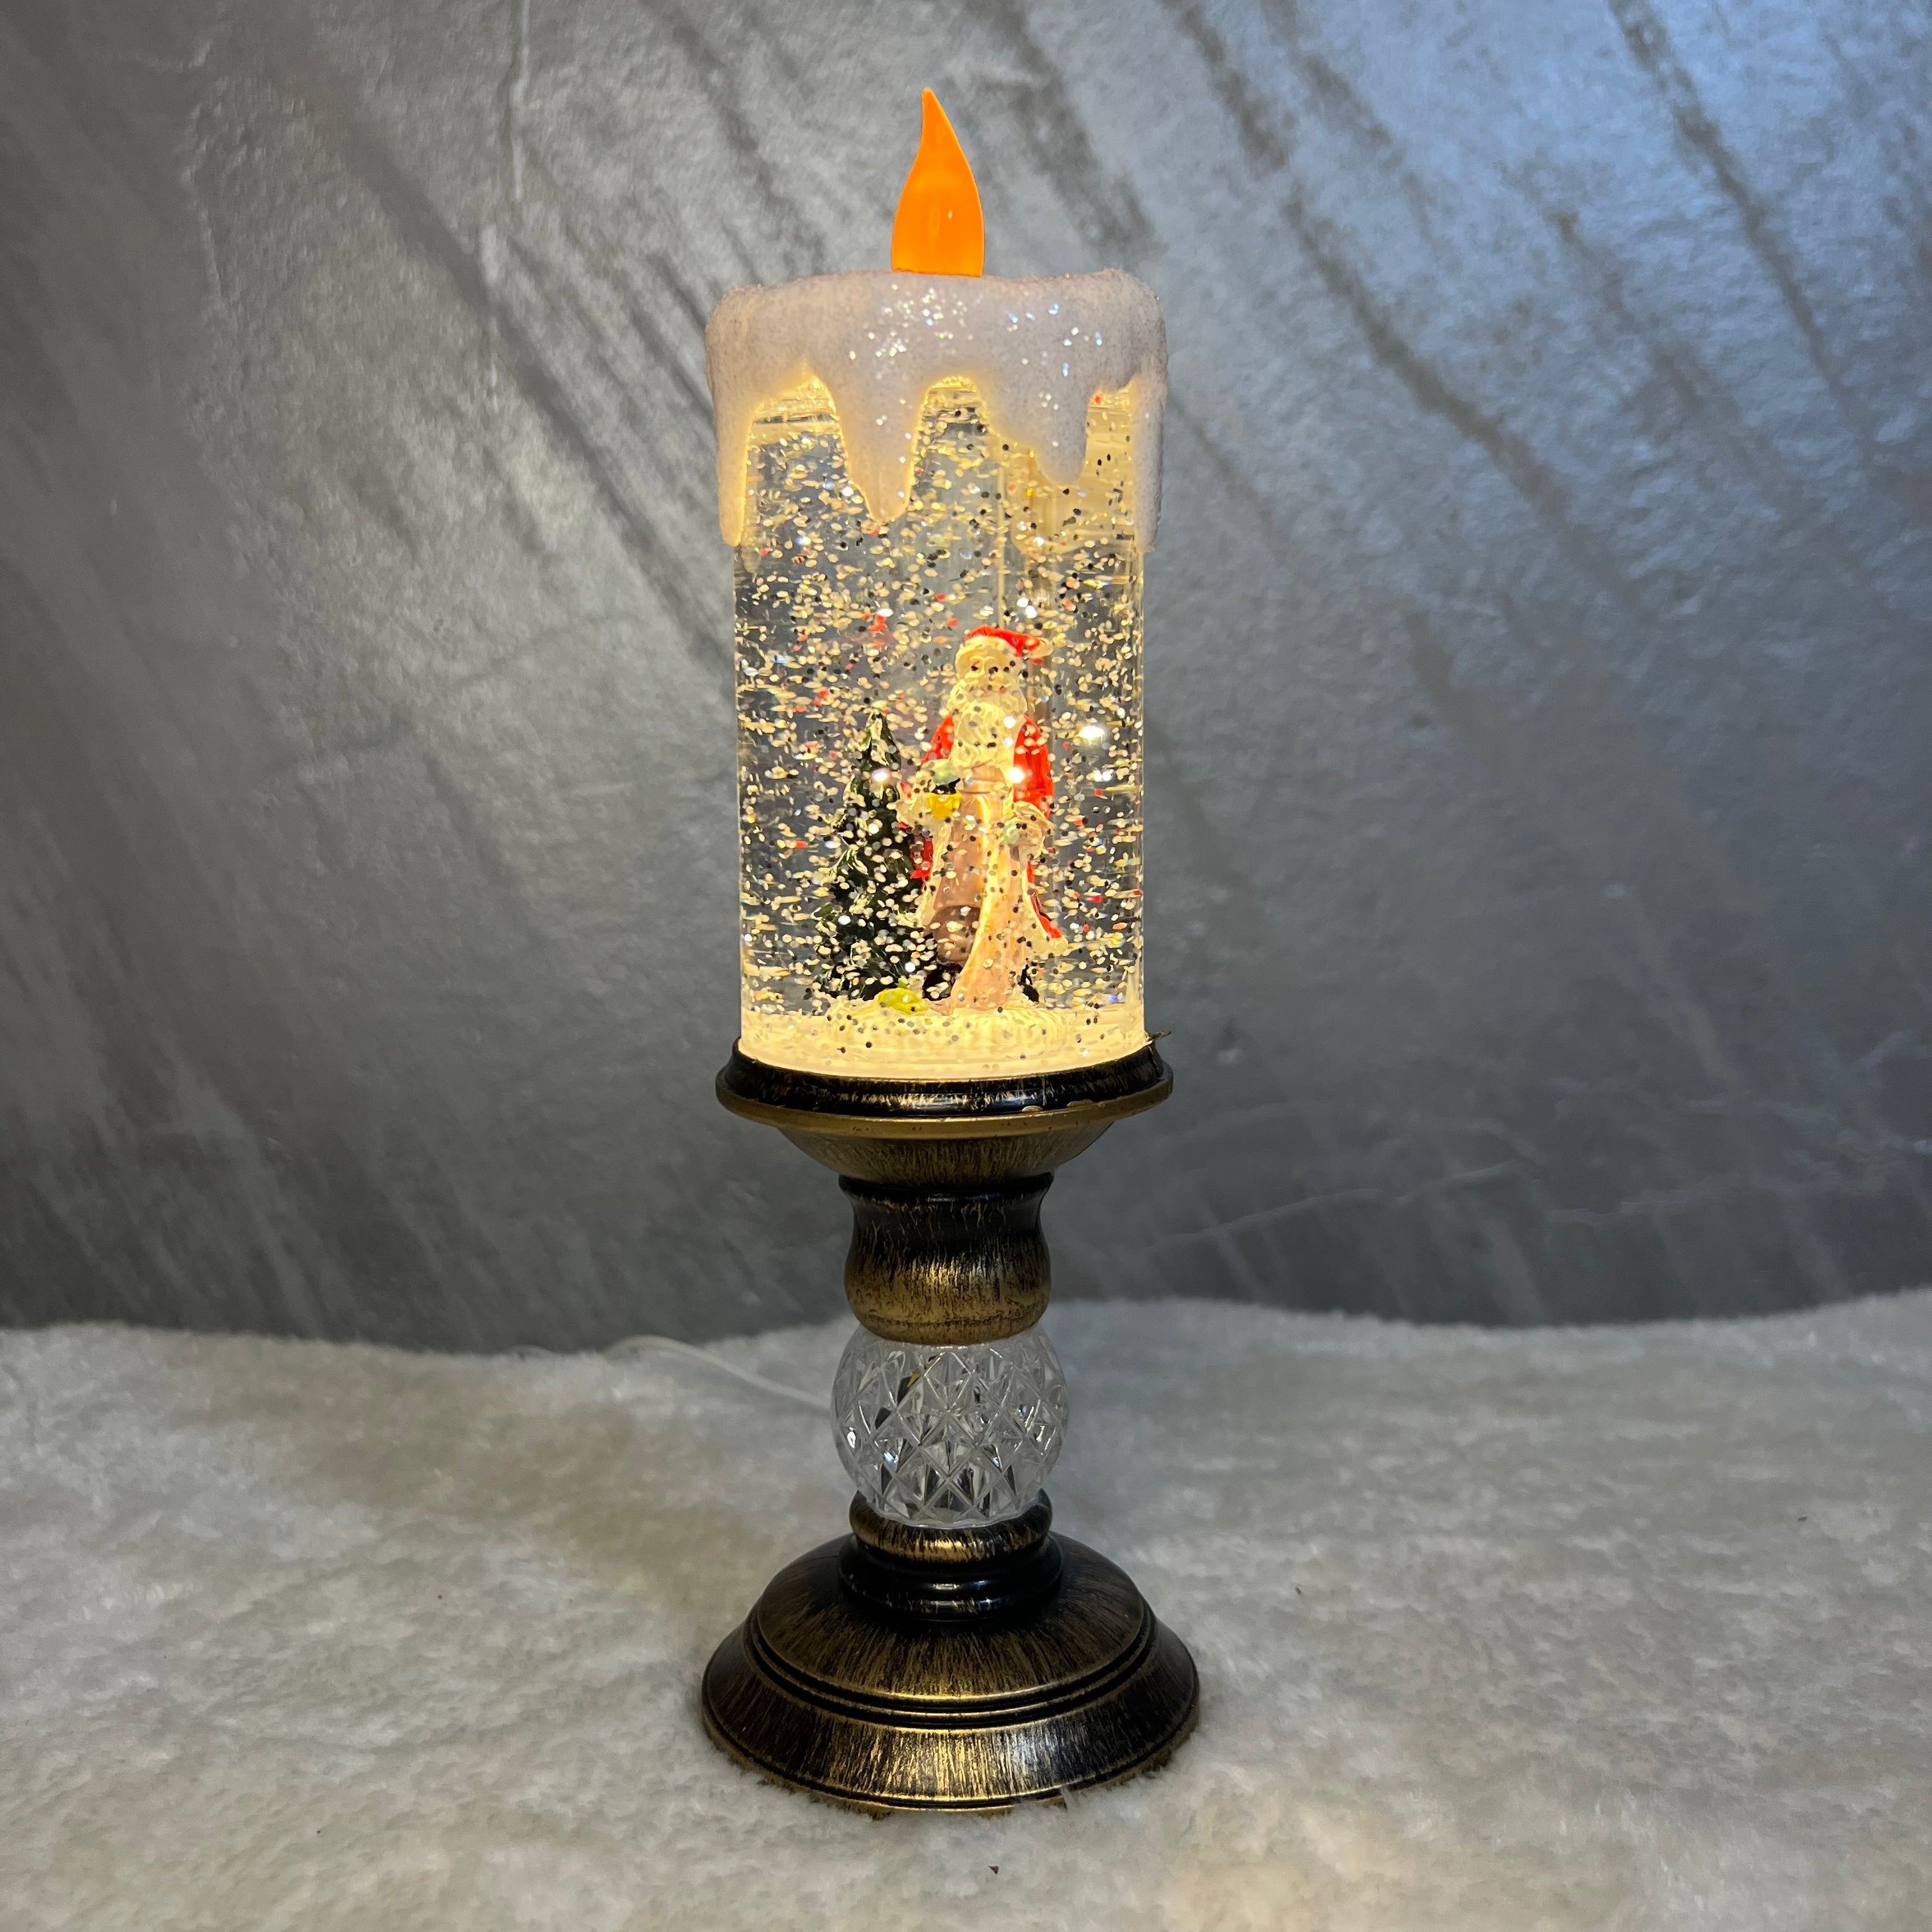 Interaktivna novogodišnja sveća deda mraz, mala, 22 cm